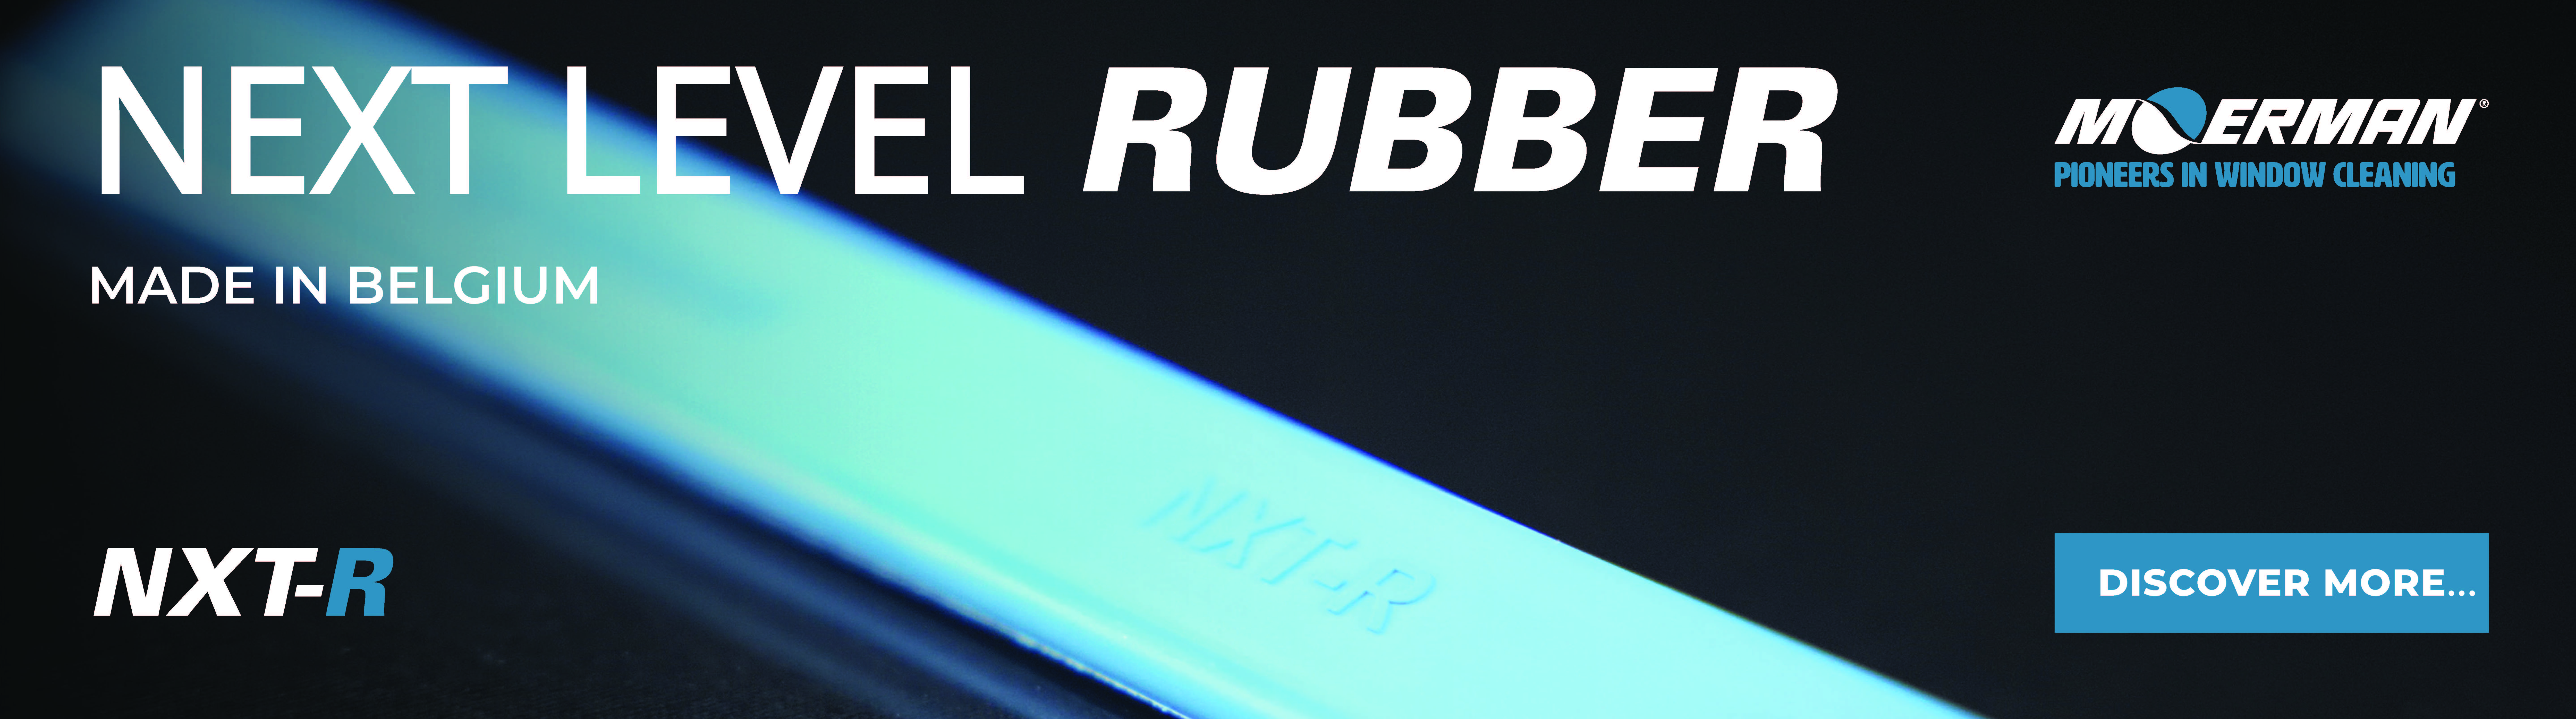 Moerman NXT-R rubber 14" /35 cm